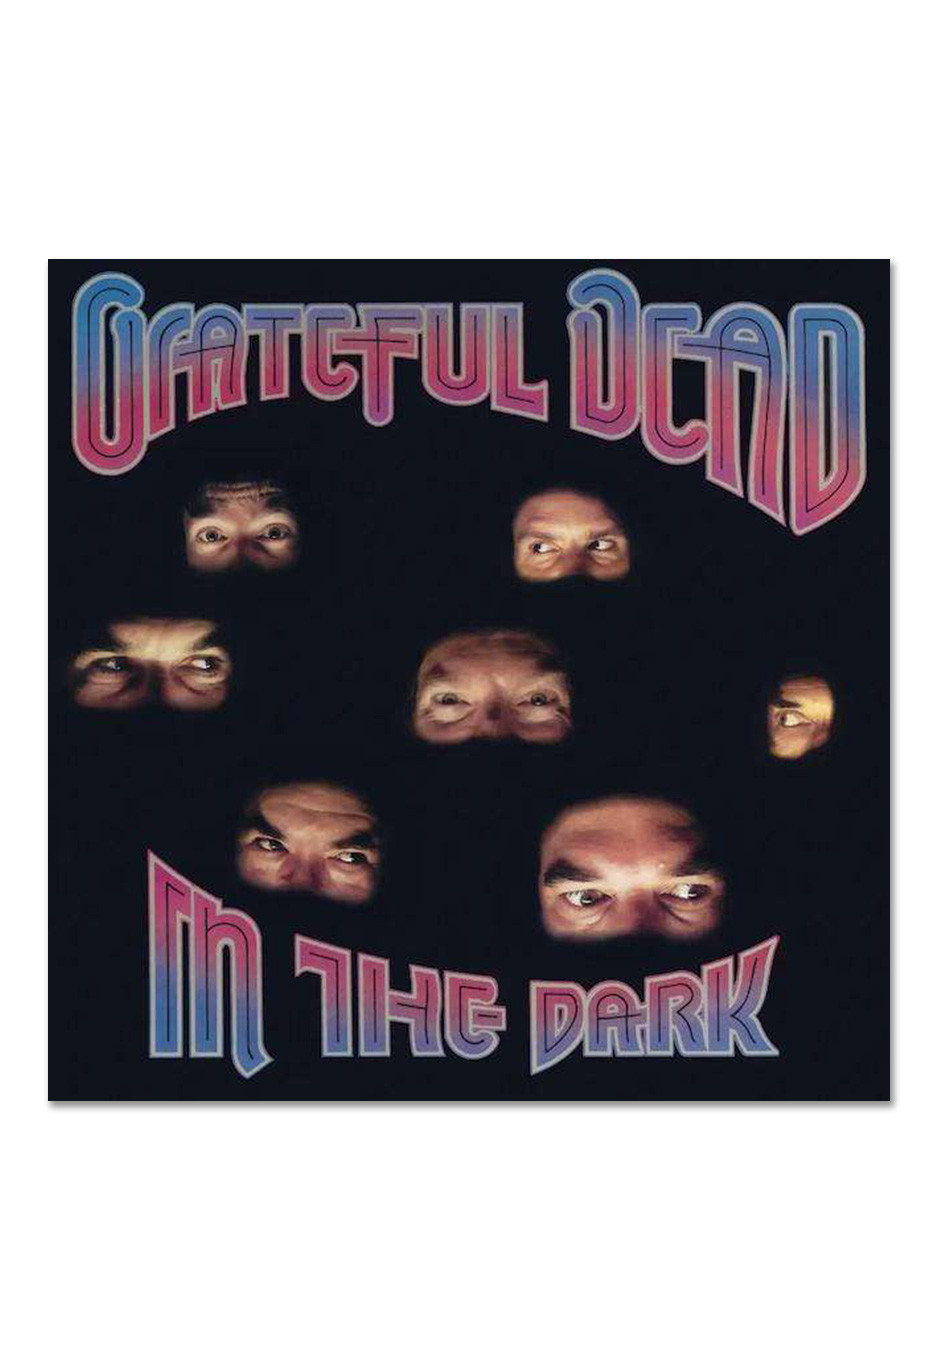 Grateful Dead - In The Dark Ltd. Silver - Colored Vinyl